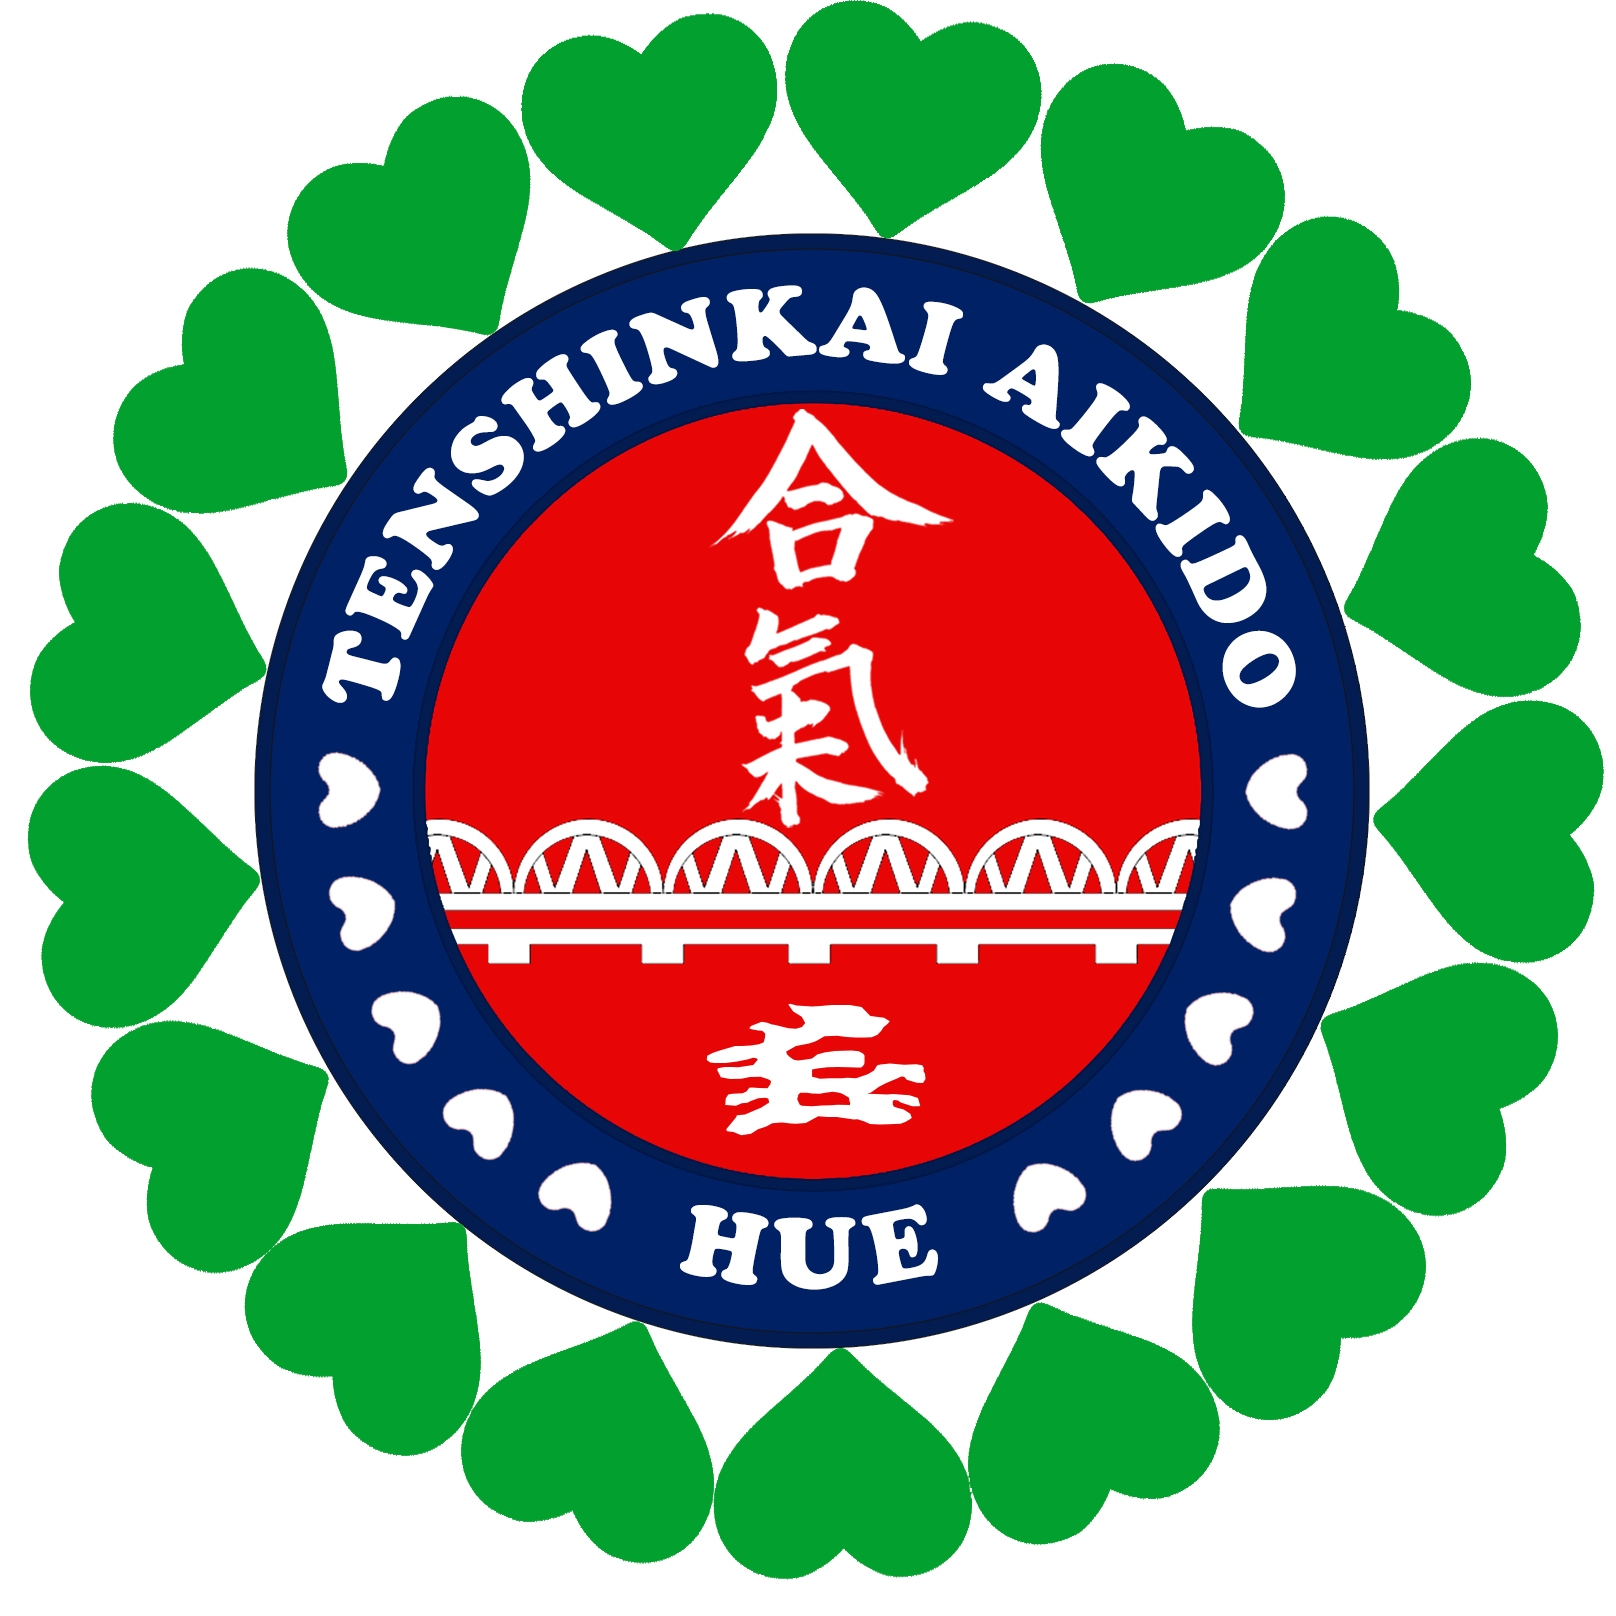 Tenshinkai Aikido Huế